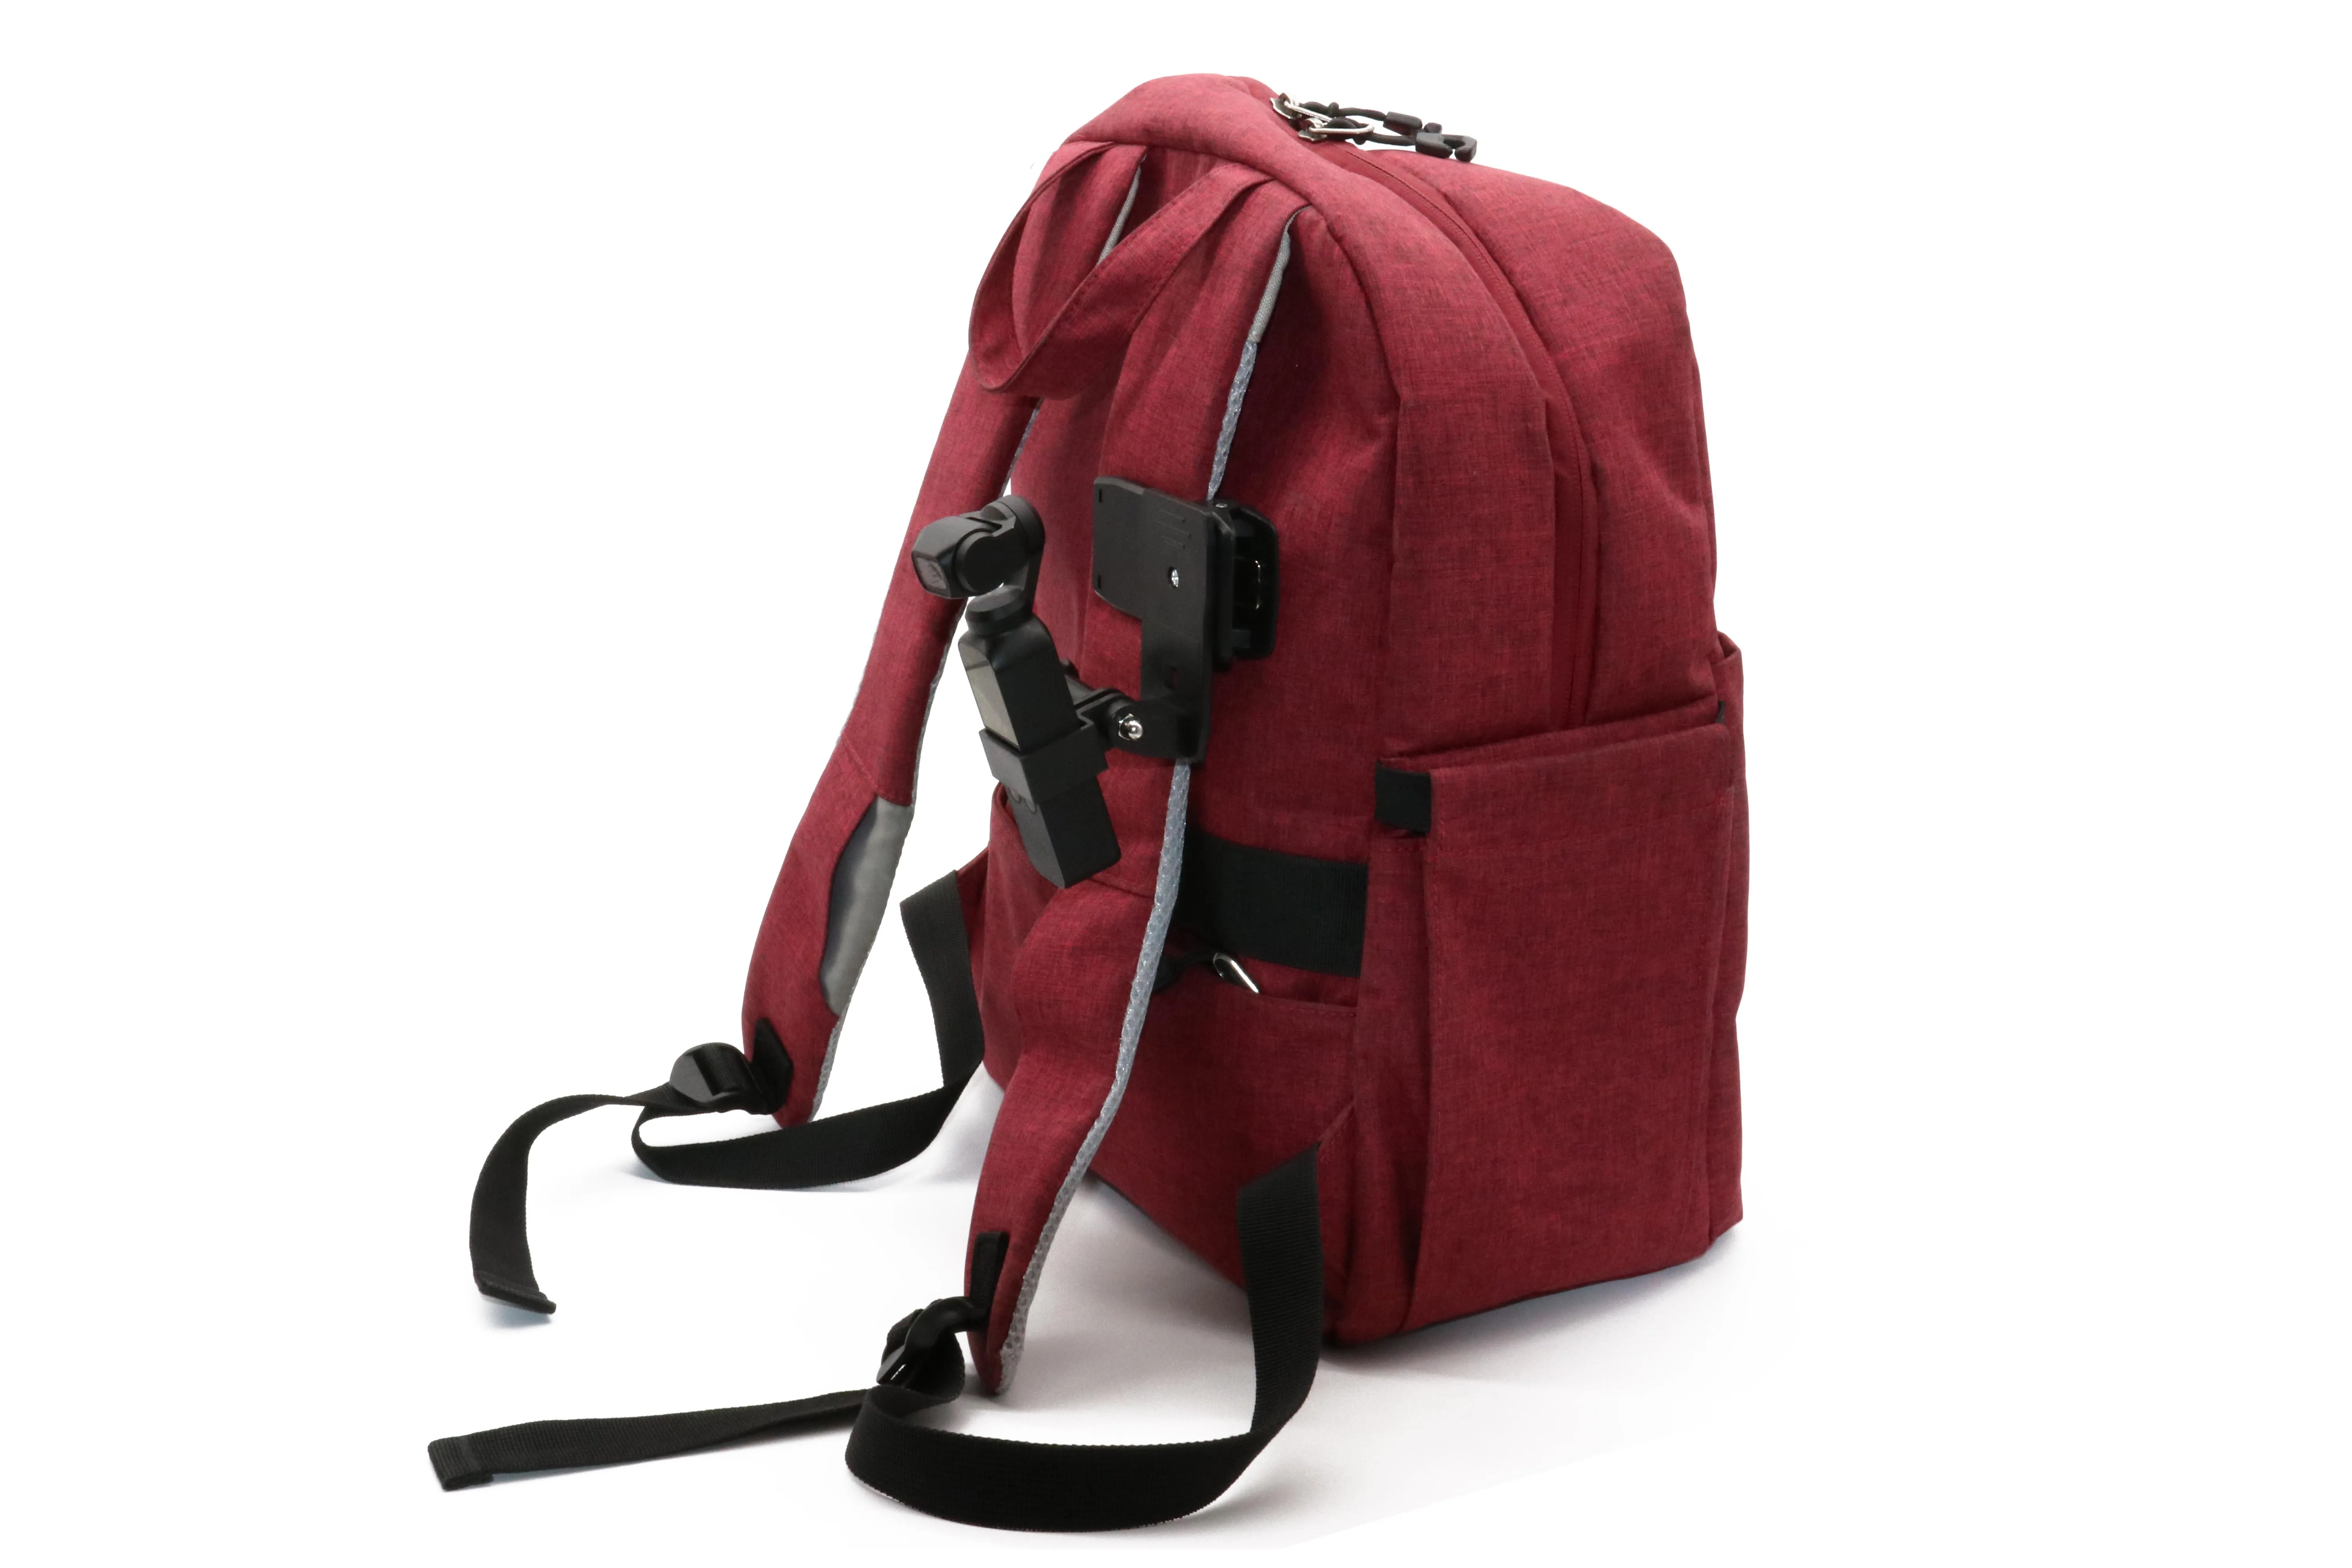 Зажим для сумки для DJI Osmo Pocket Gimbal фиксированный адаптер крепление быстросъемный держатель рюкзака аксессуары